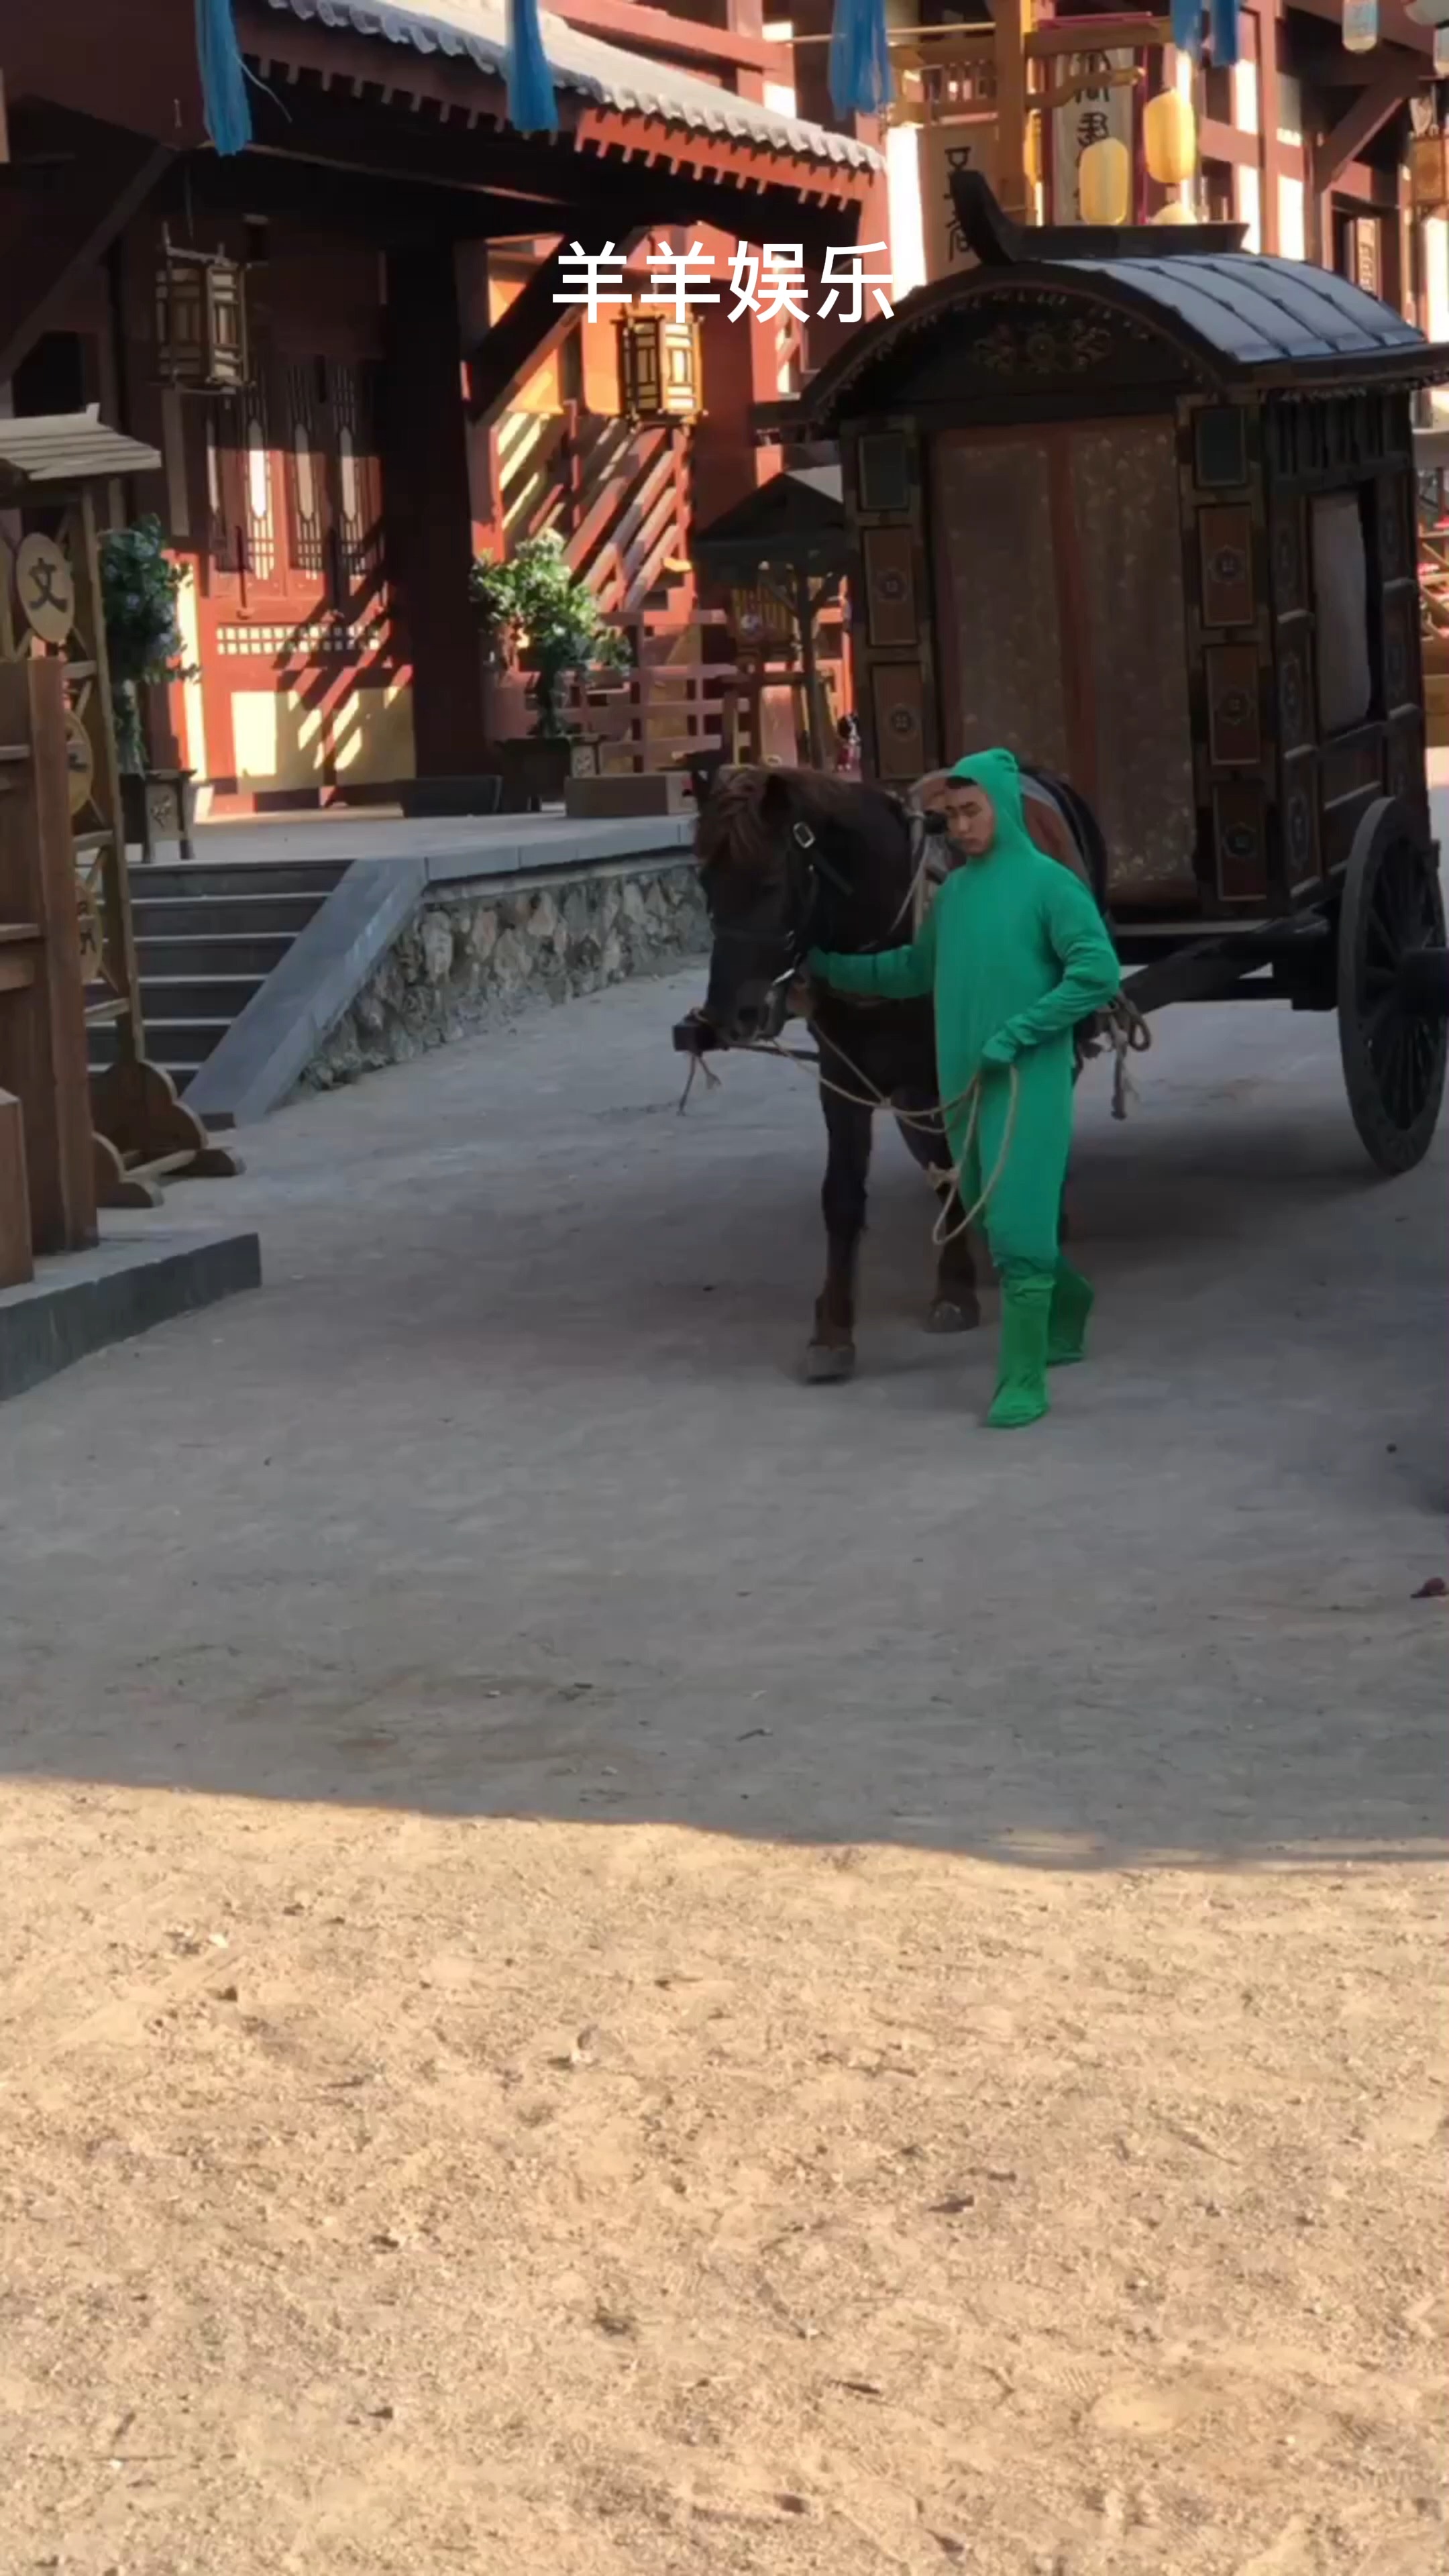 古装剧拍戏现场,绿衣人牵马,你知道为啥要穿绿衣吗?